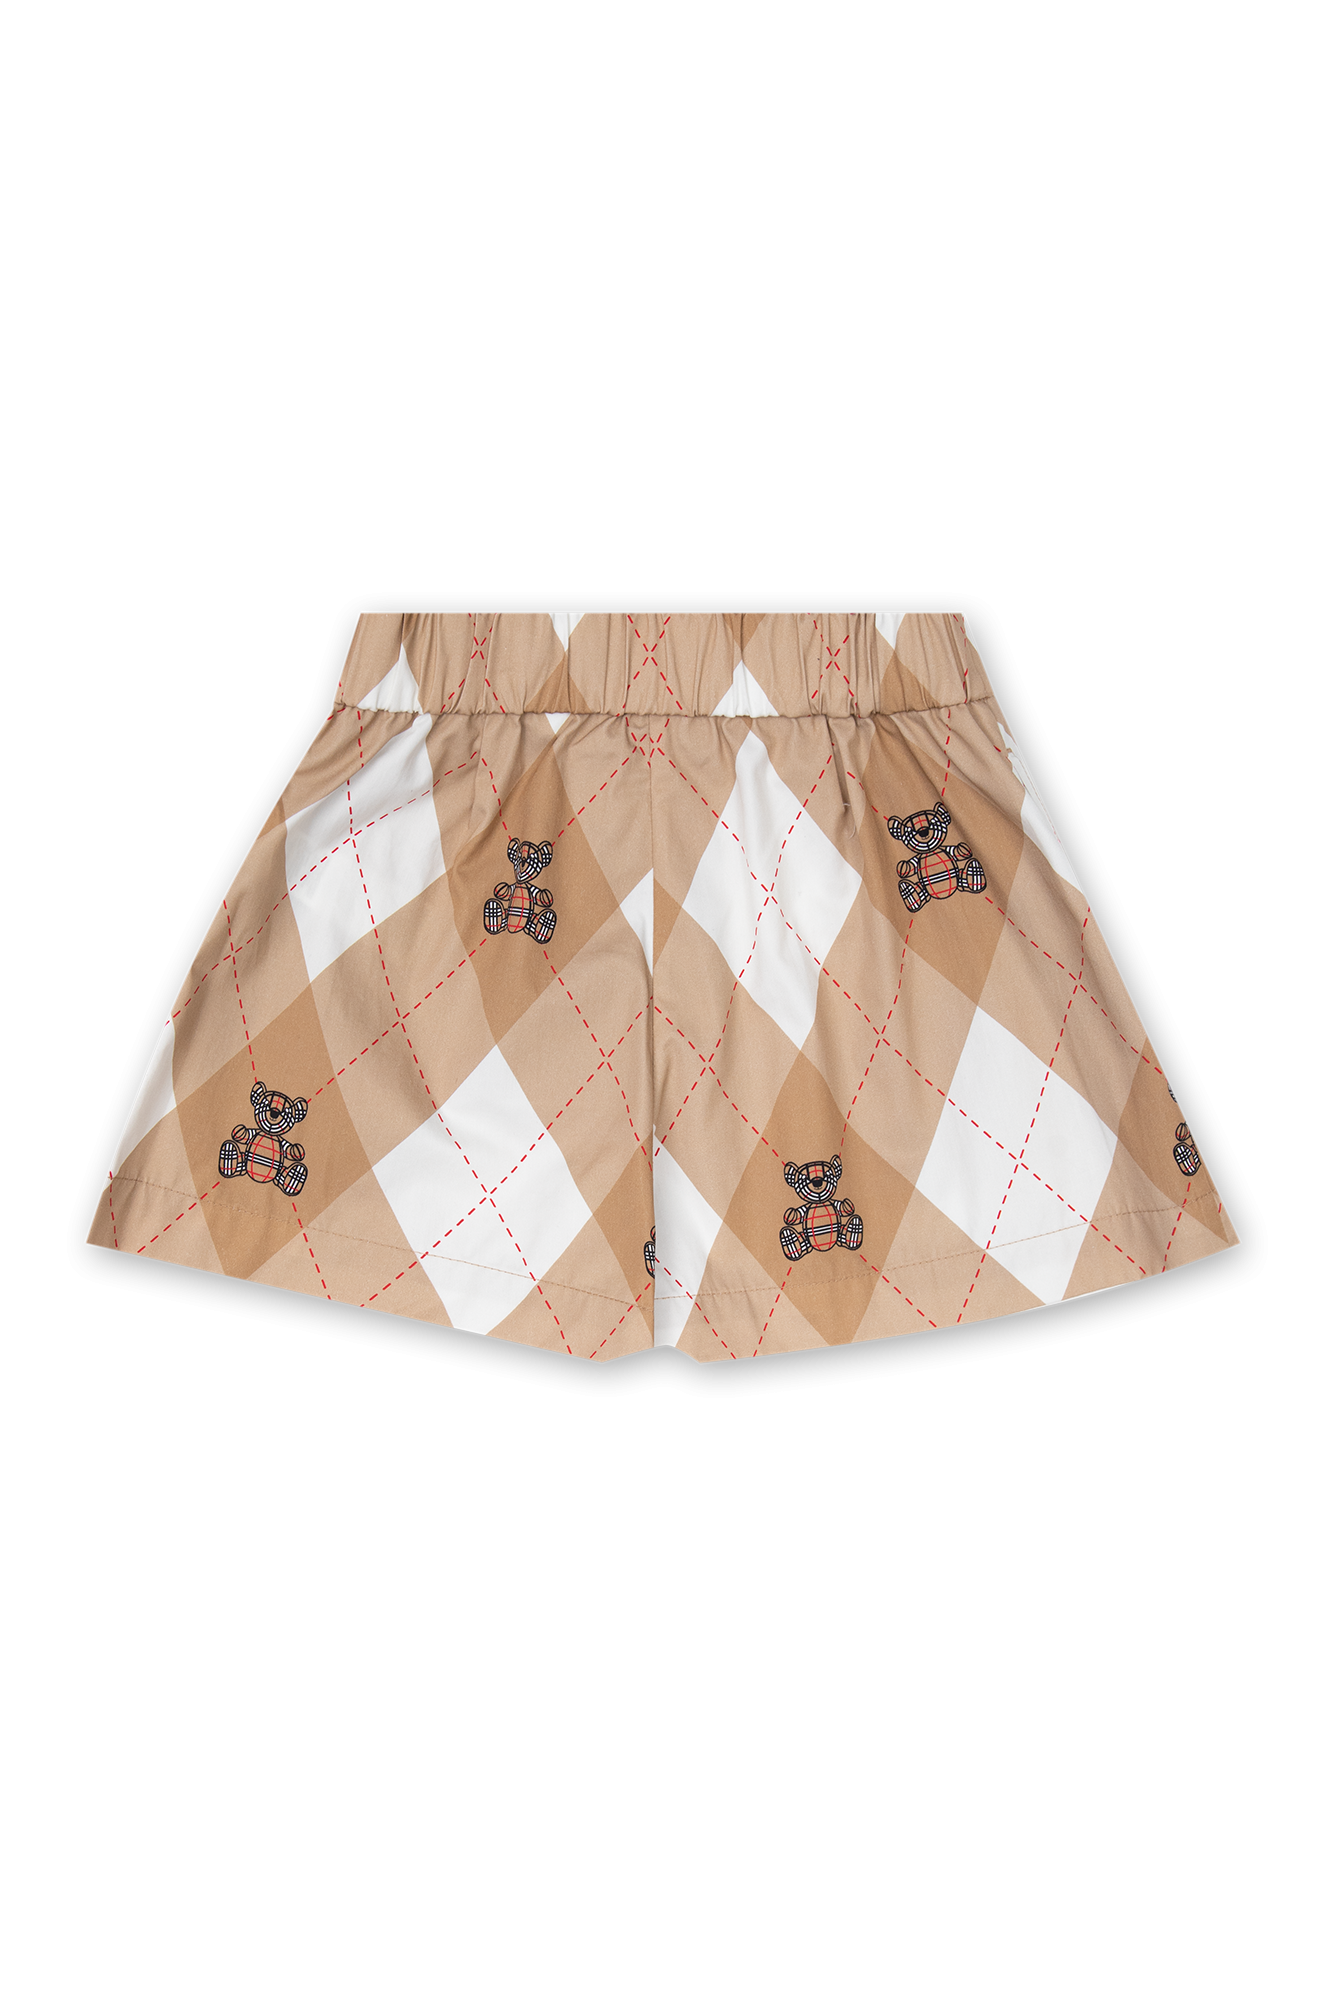 Burberry Girls Beige Cotton Argyle Shorts